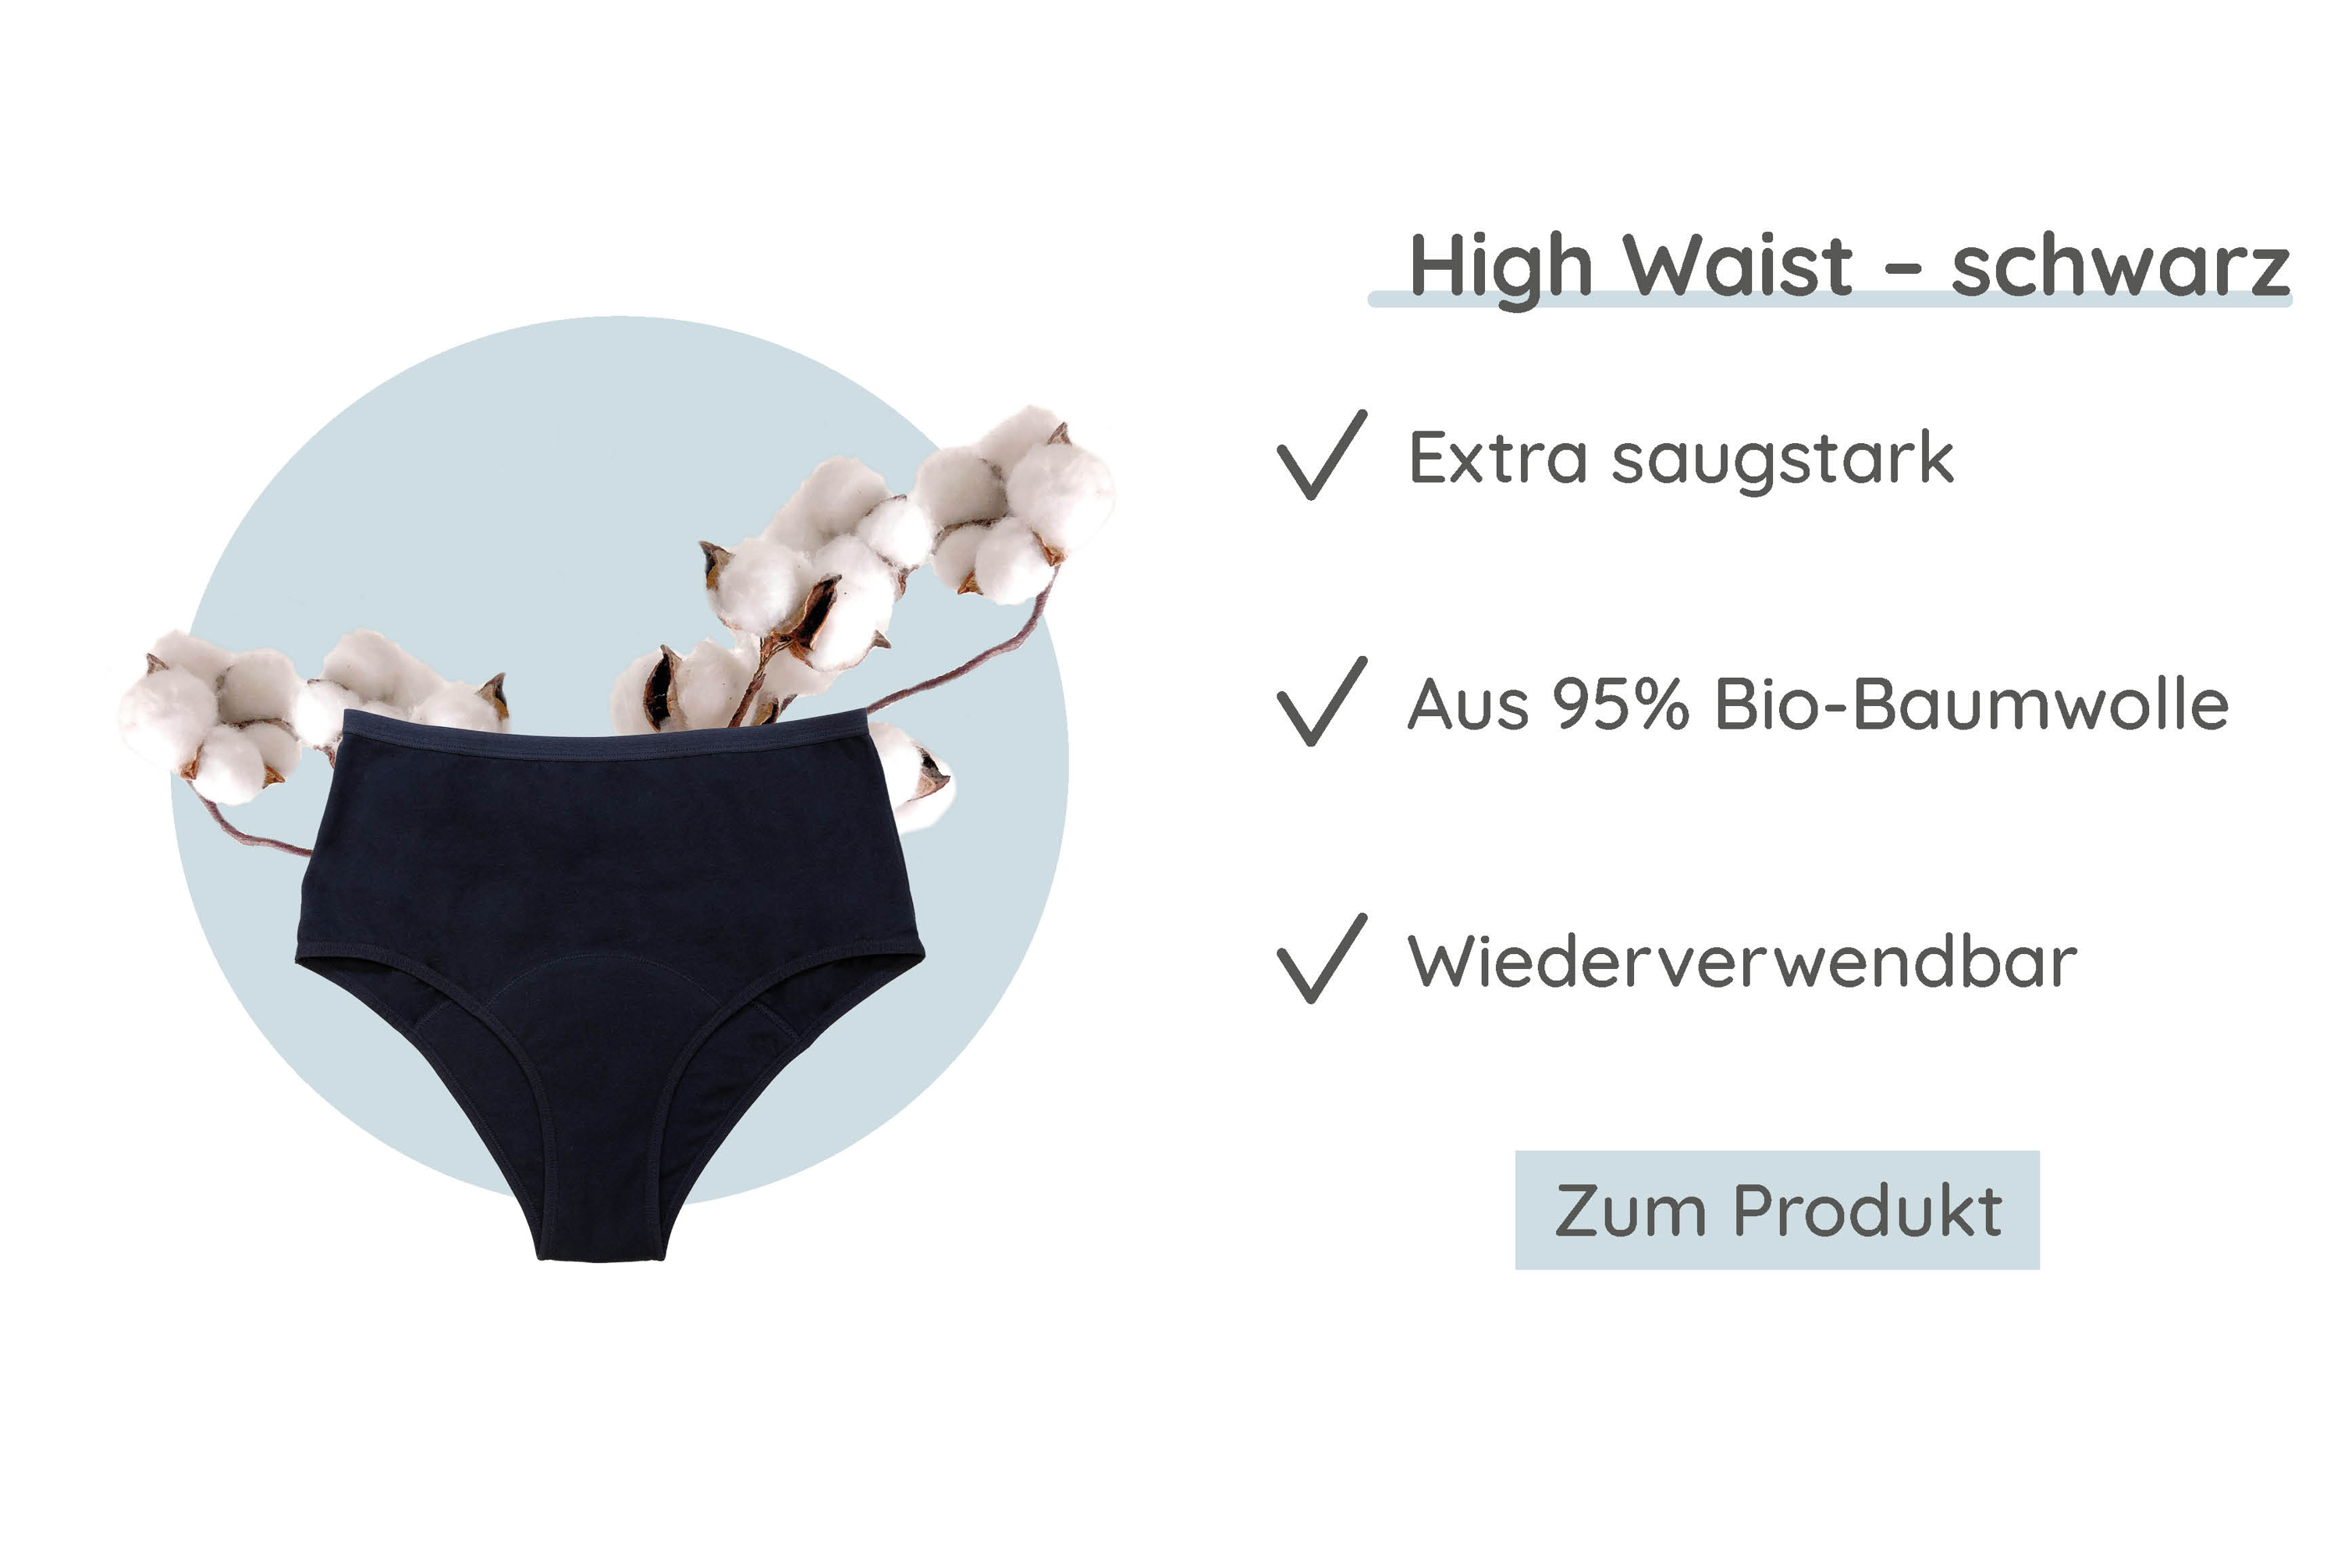 Periodenunterwäsche MYLILY | Modell High Waist Schwarz | Biozid frei & vegan 